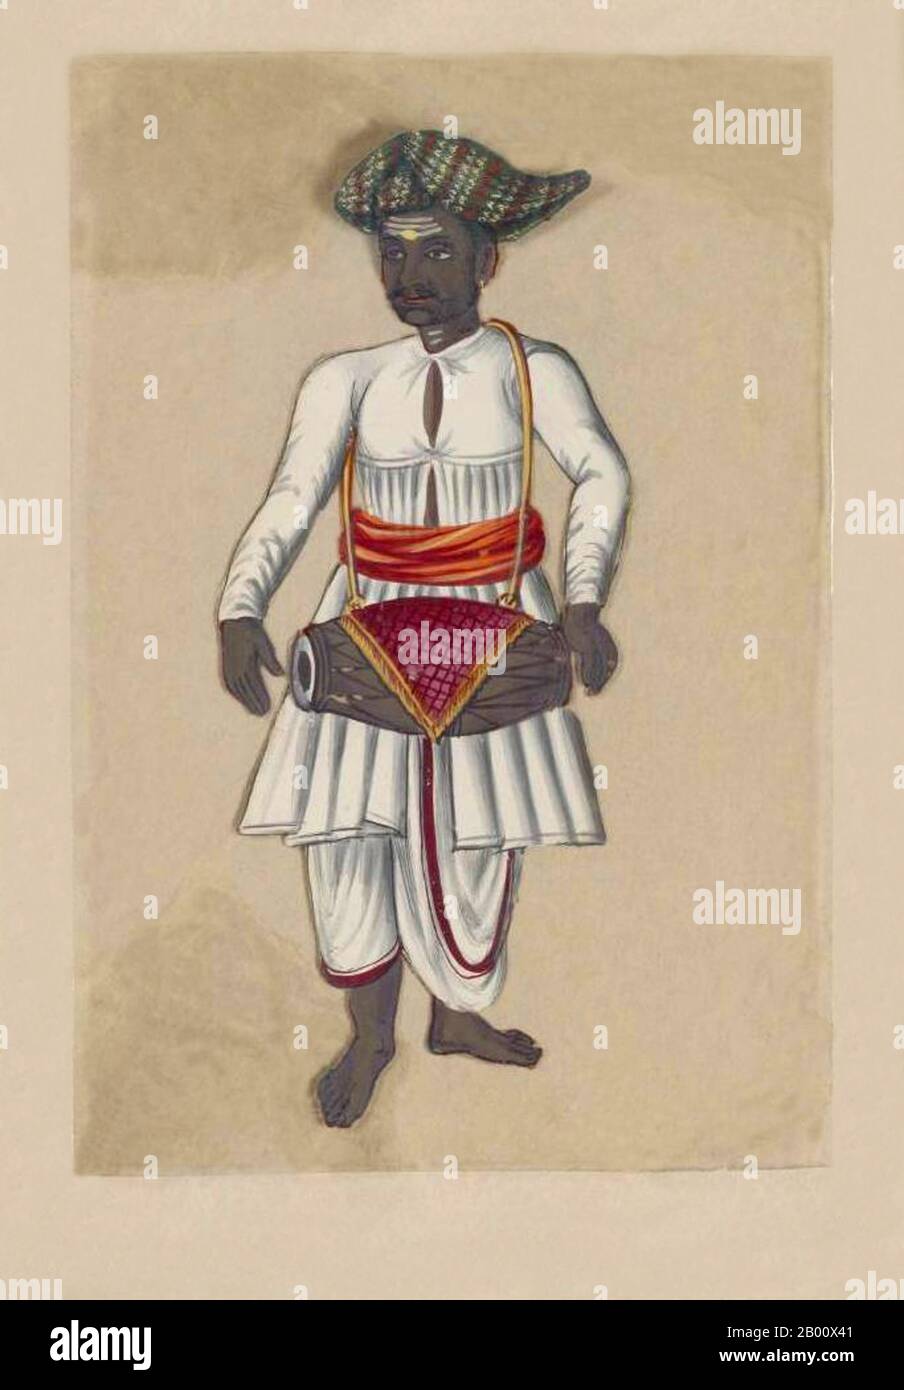 Indien: 'Hindoo/Hindu Musiker mit Trommel'. Handkoloriertes Bild auf einem dünnen Glimmerblatt aus einem Manuskript mit dem Titel: „zweiundsiebzig Kastenexemplare ‘sIndien“ (Madura, Südindien: 1837). Das vollständige Buch besteht aus 72 handbemalten Bildern von Männern und Frauen der verschiedenen Kasten und religiösen und ethnischen Gruppen, die in Madura, Tamil Nadu, damals gefunden wurden. Das Manuskript zeigt indische Kleider- und Schmuckverzierungen in der Madura-Region, wie sie vor dem Beginn westlicher Einflüsse auf südasiatische Kleidung und Stil erschienen. Jedes Bildnis ist in Englisch und in Tamil untertipptelt. Stockfoto